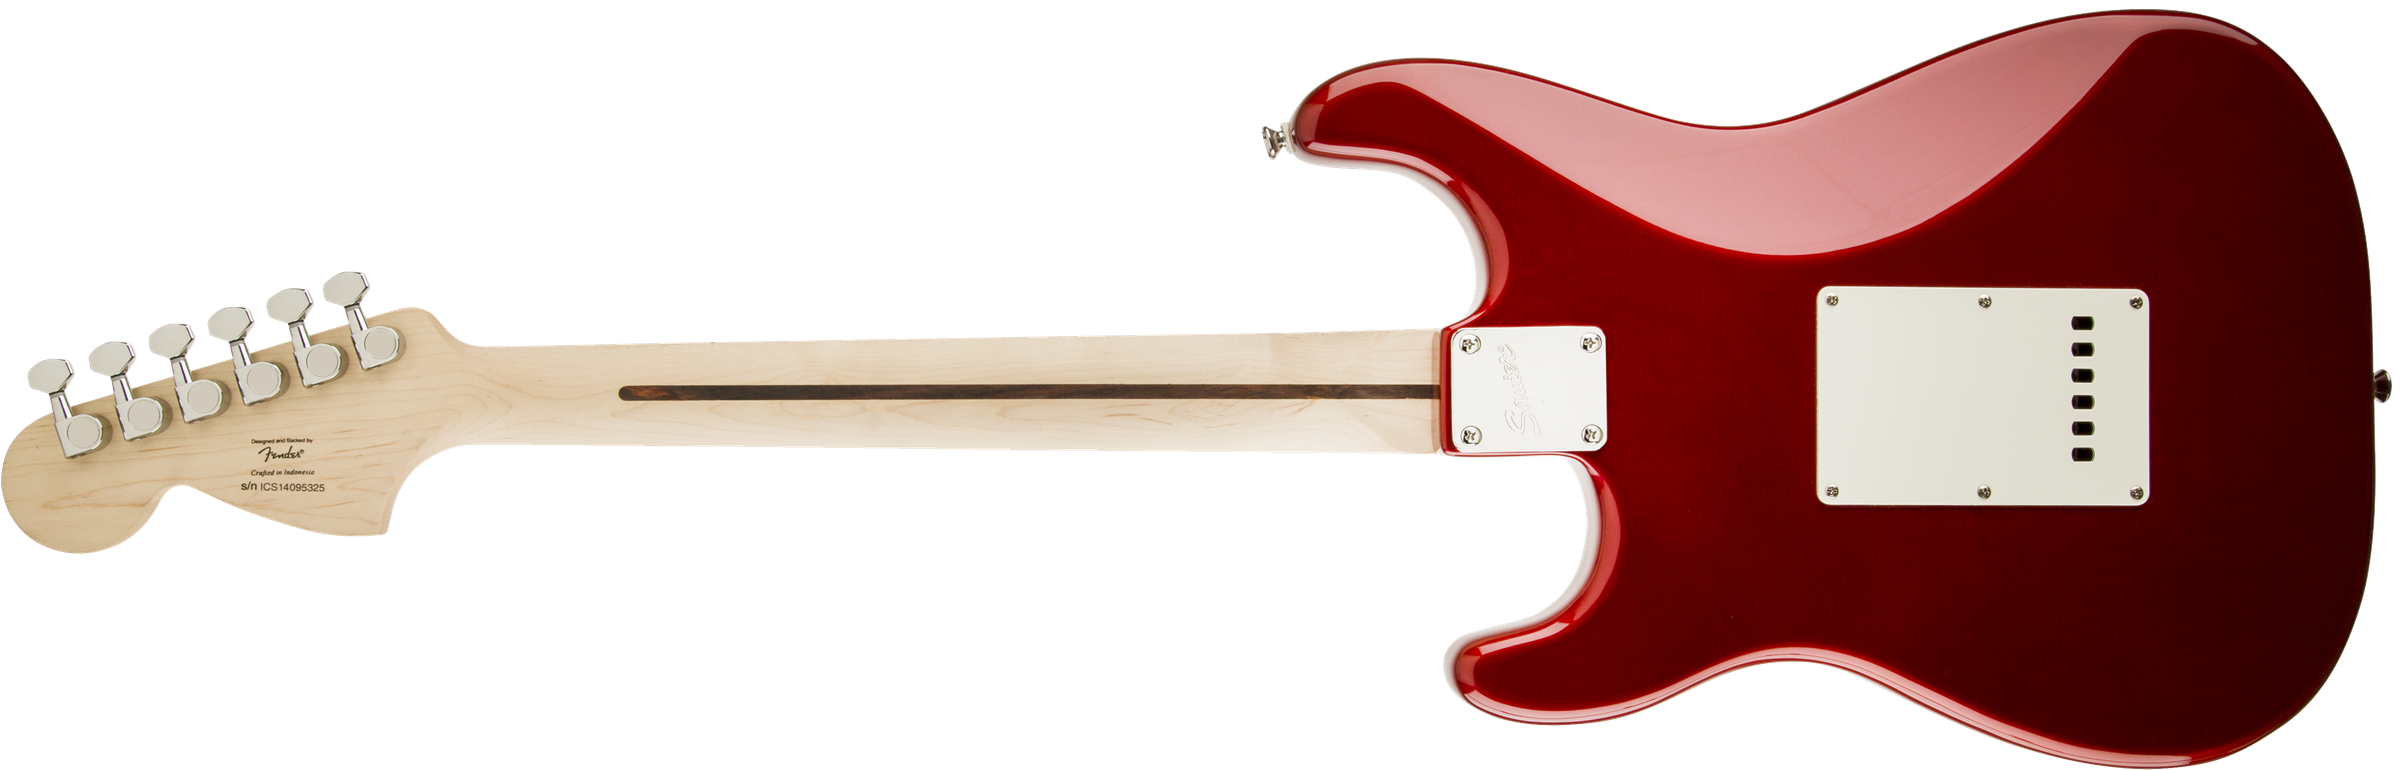 Squier Strat Standard Mn - Candy Apple Red - Elektrische gitaar in Str-vorm - Variation 1